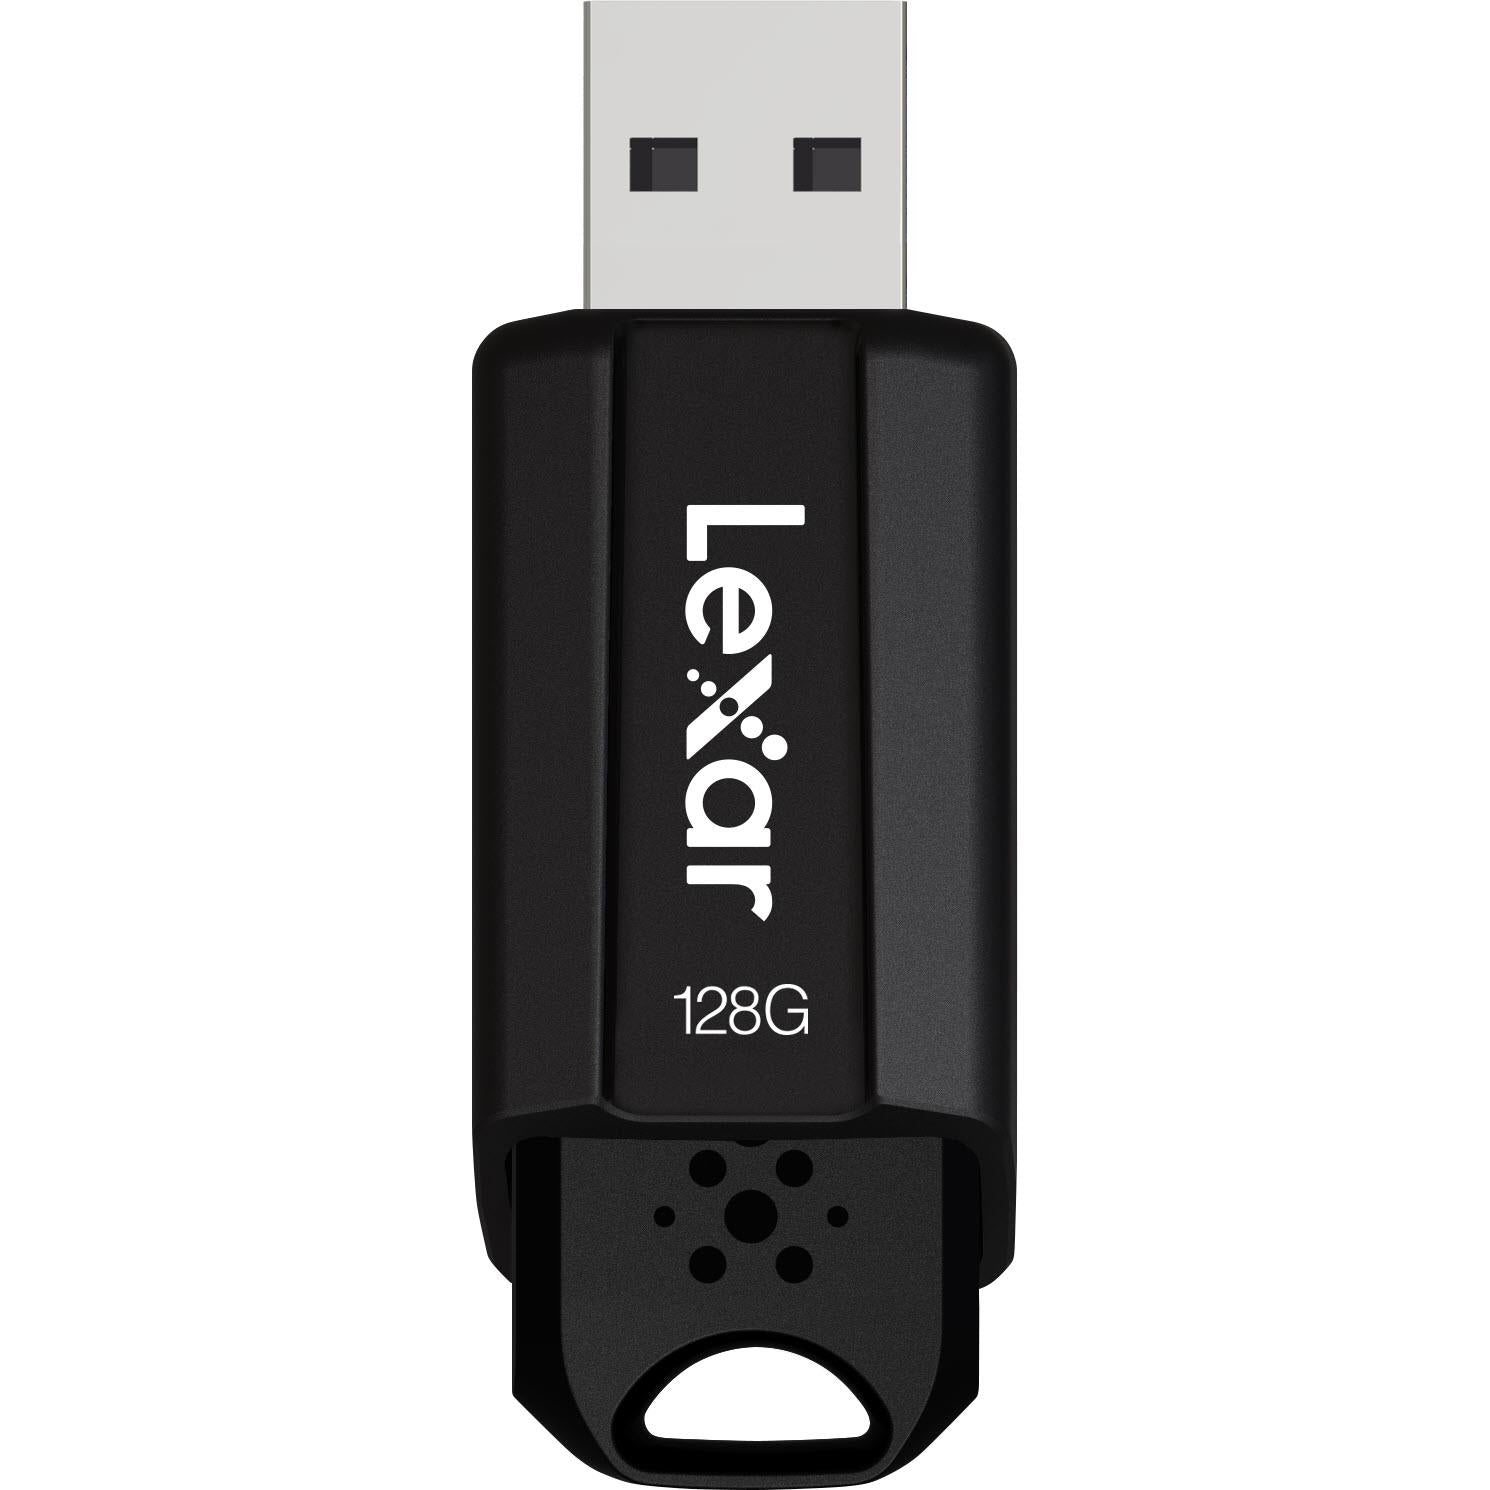 SanDisk Ultra USB Type-C Flash Drive (32GB) - JB Hi-Fi